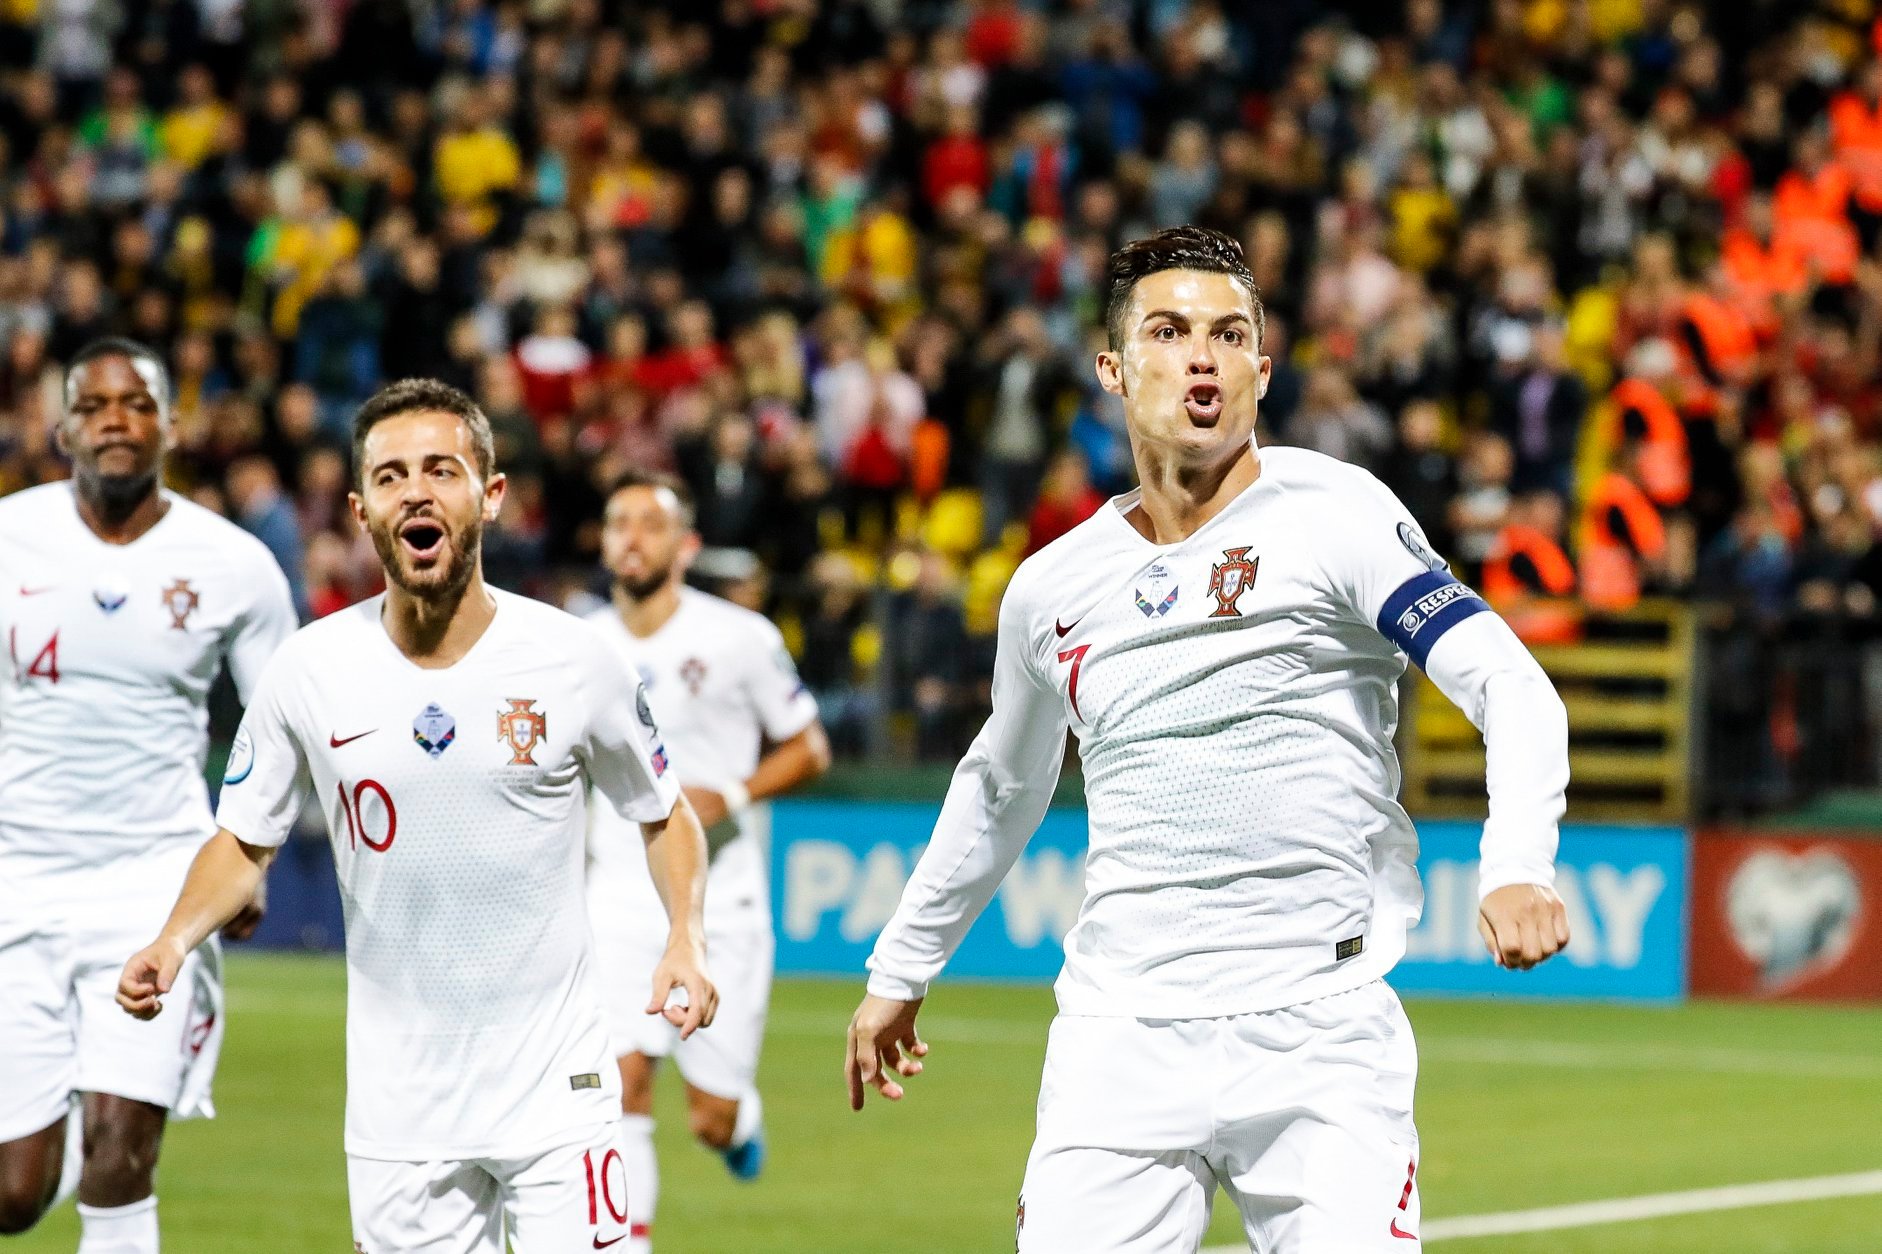 C. Ronaldo meg tudja dönteni a válogatottsági gólrekordot? | Az online